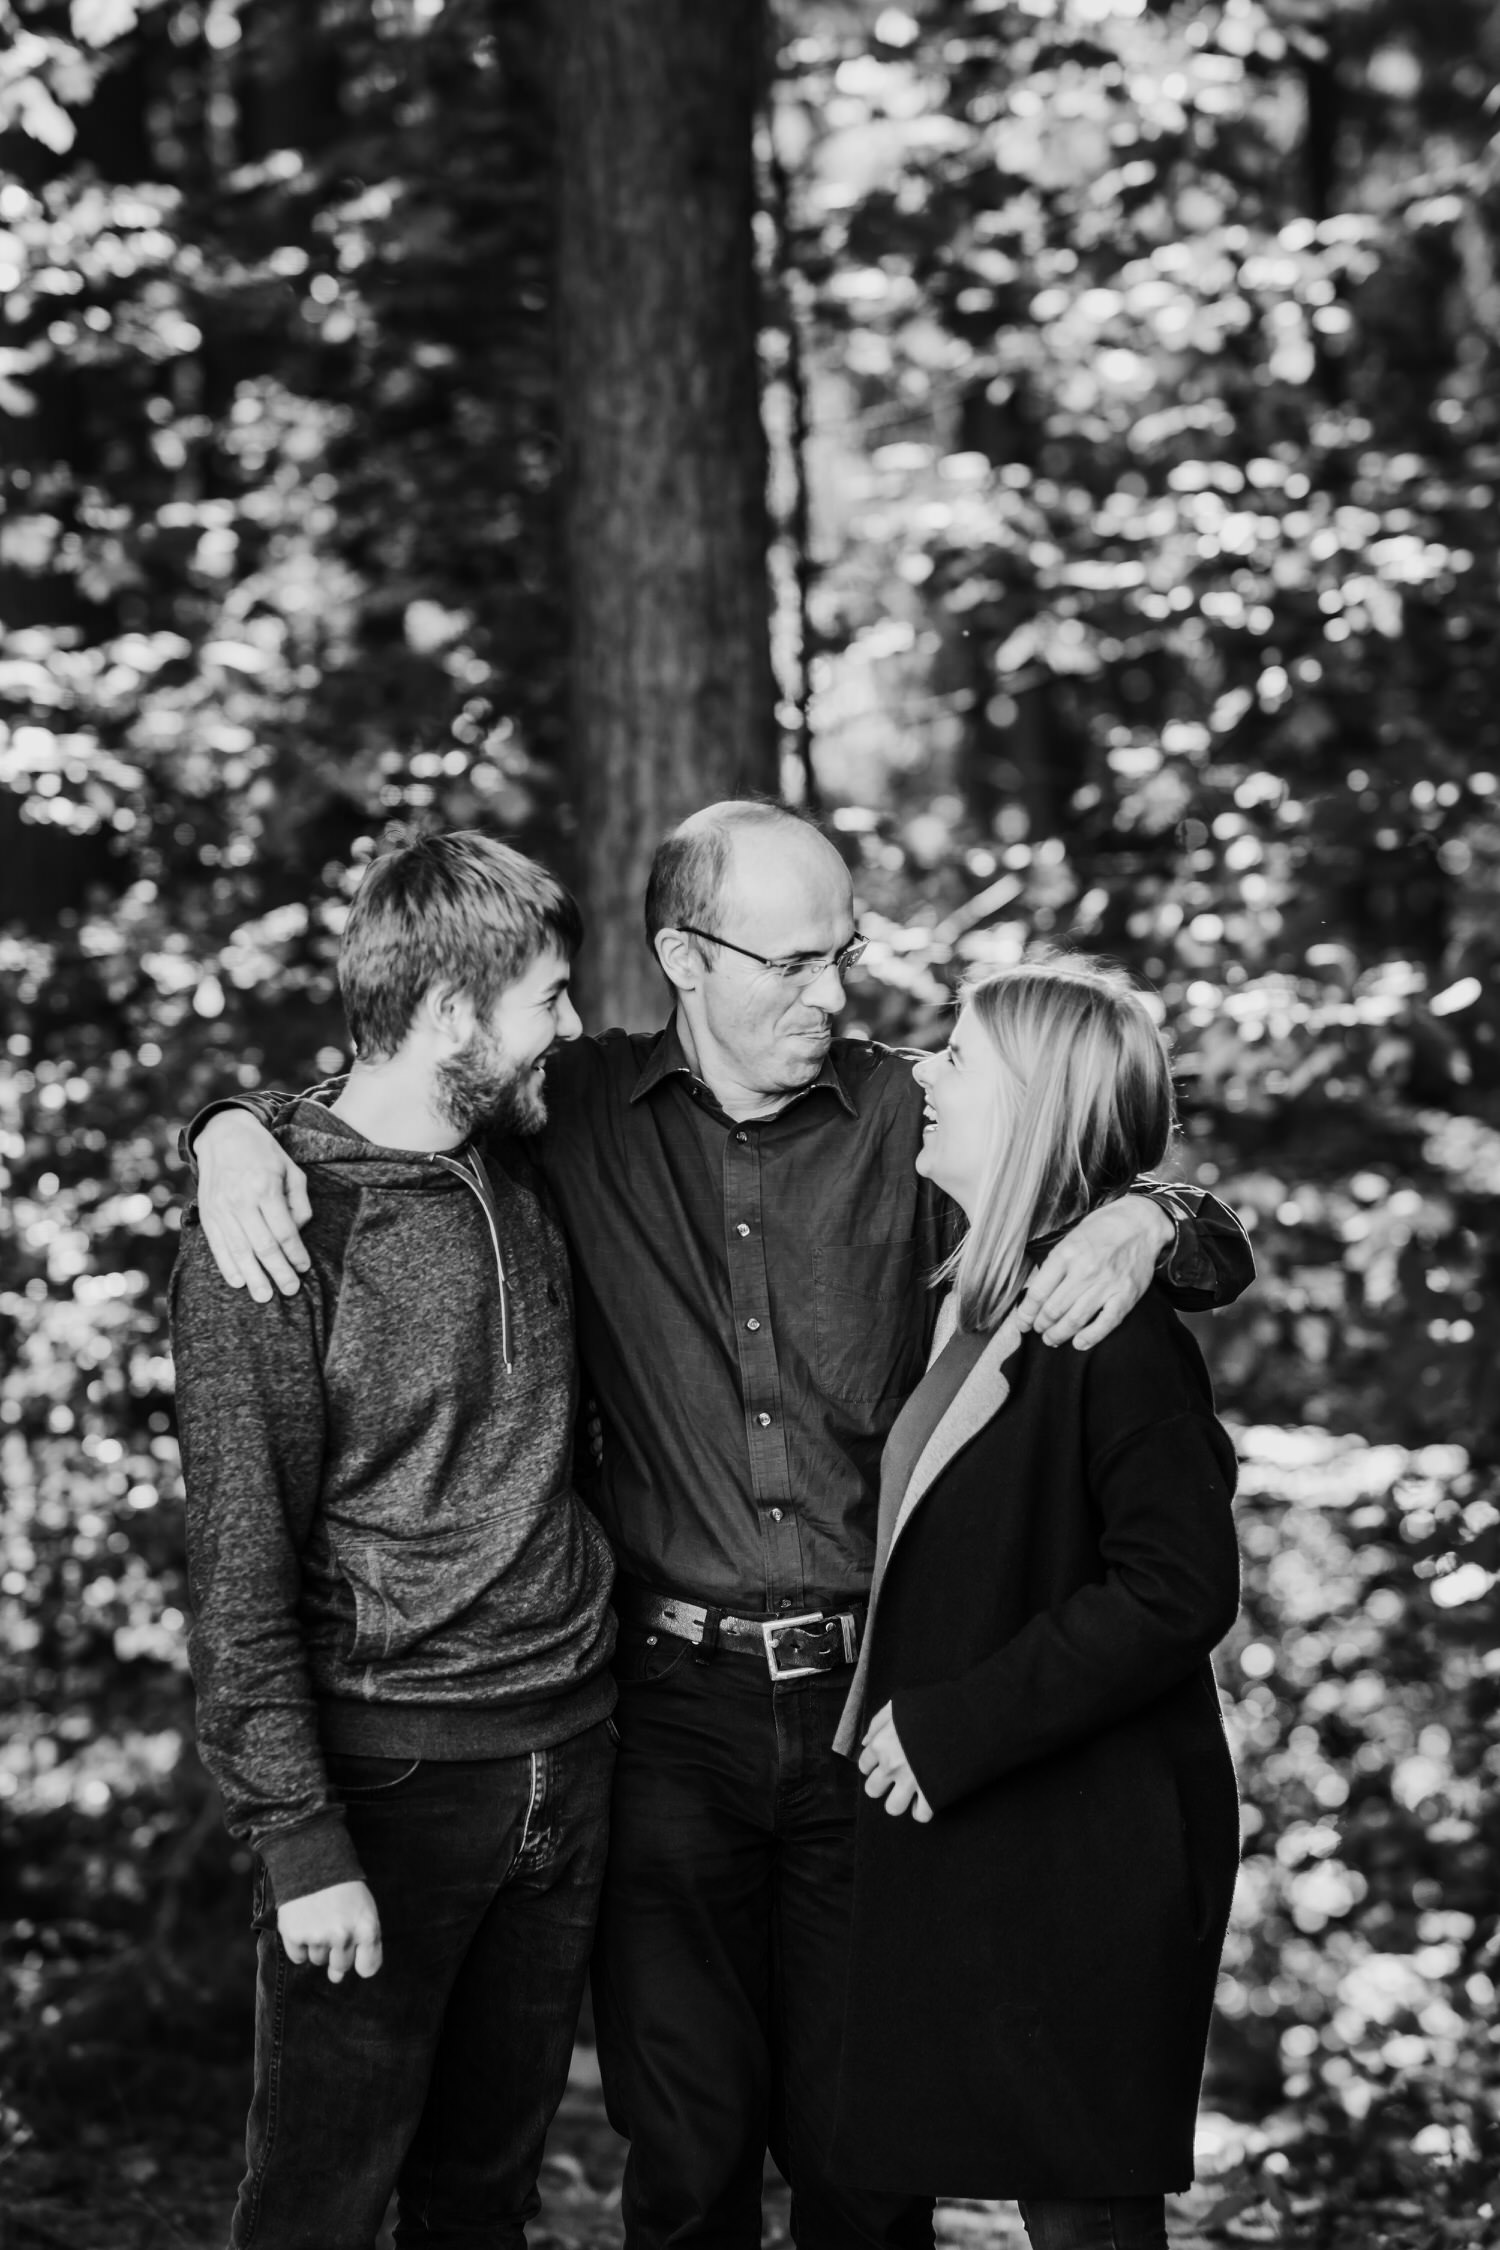 Lebendige Familienbilder | Familienfotografie Aachen